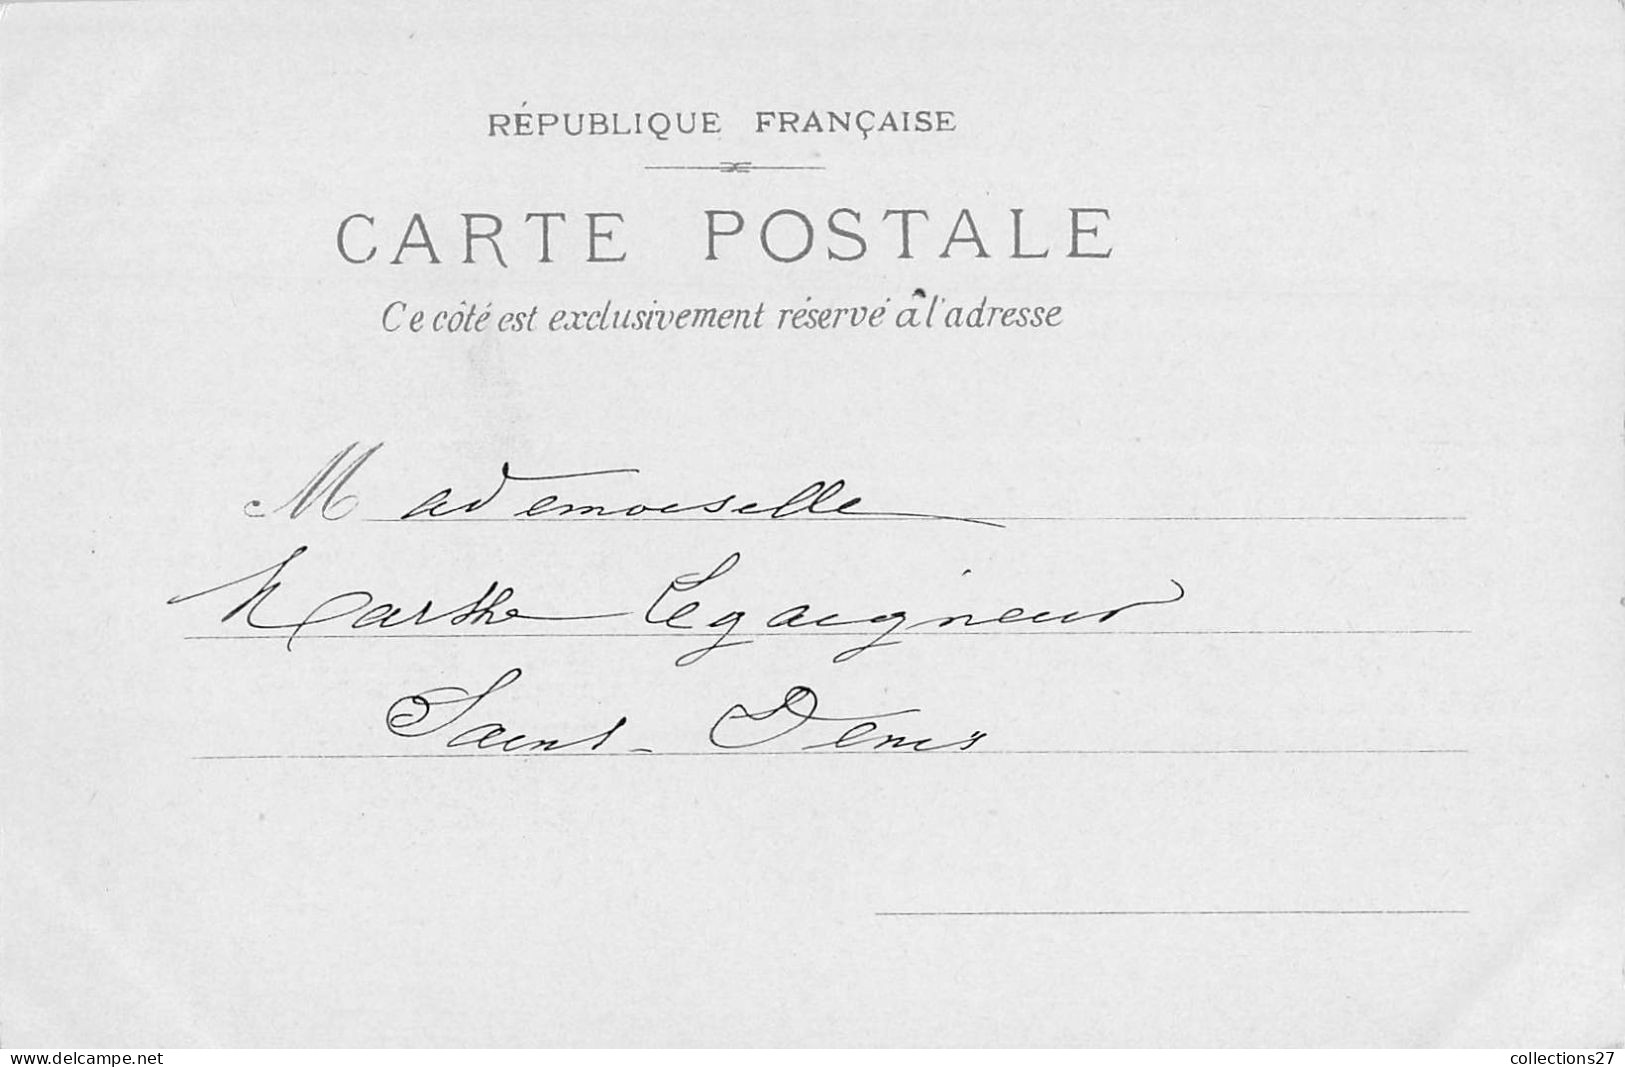 PARIS- 8 CARTES - EXPOSITION UNIVERSLLE 1900 -baschet editeur